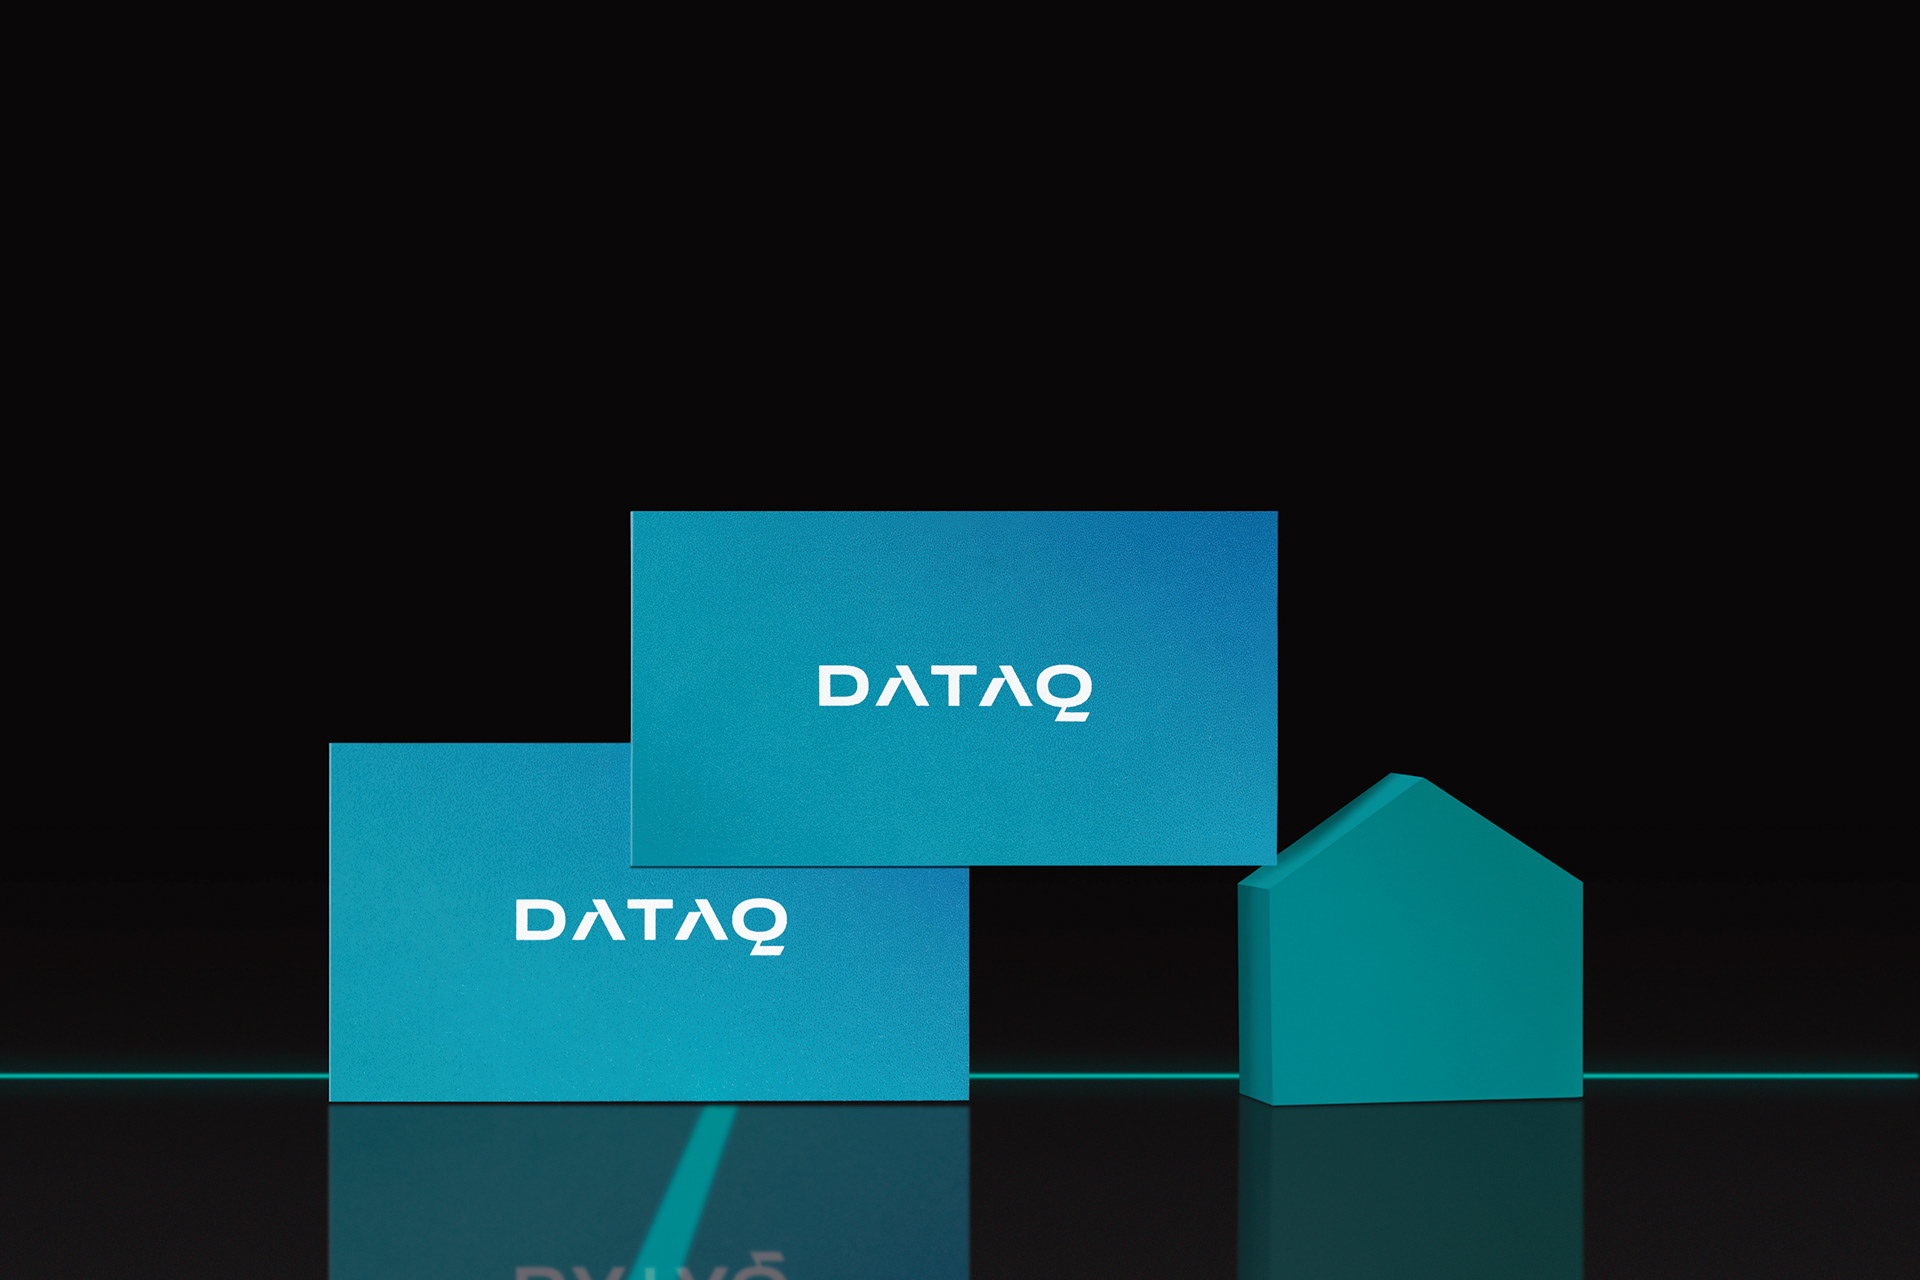 数据分析平台DATAQ品牌形象设计